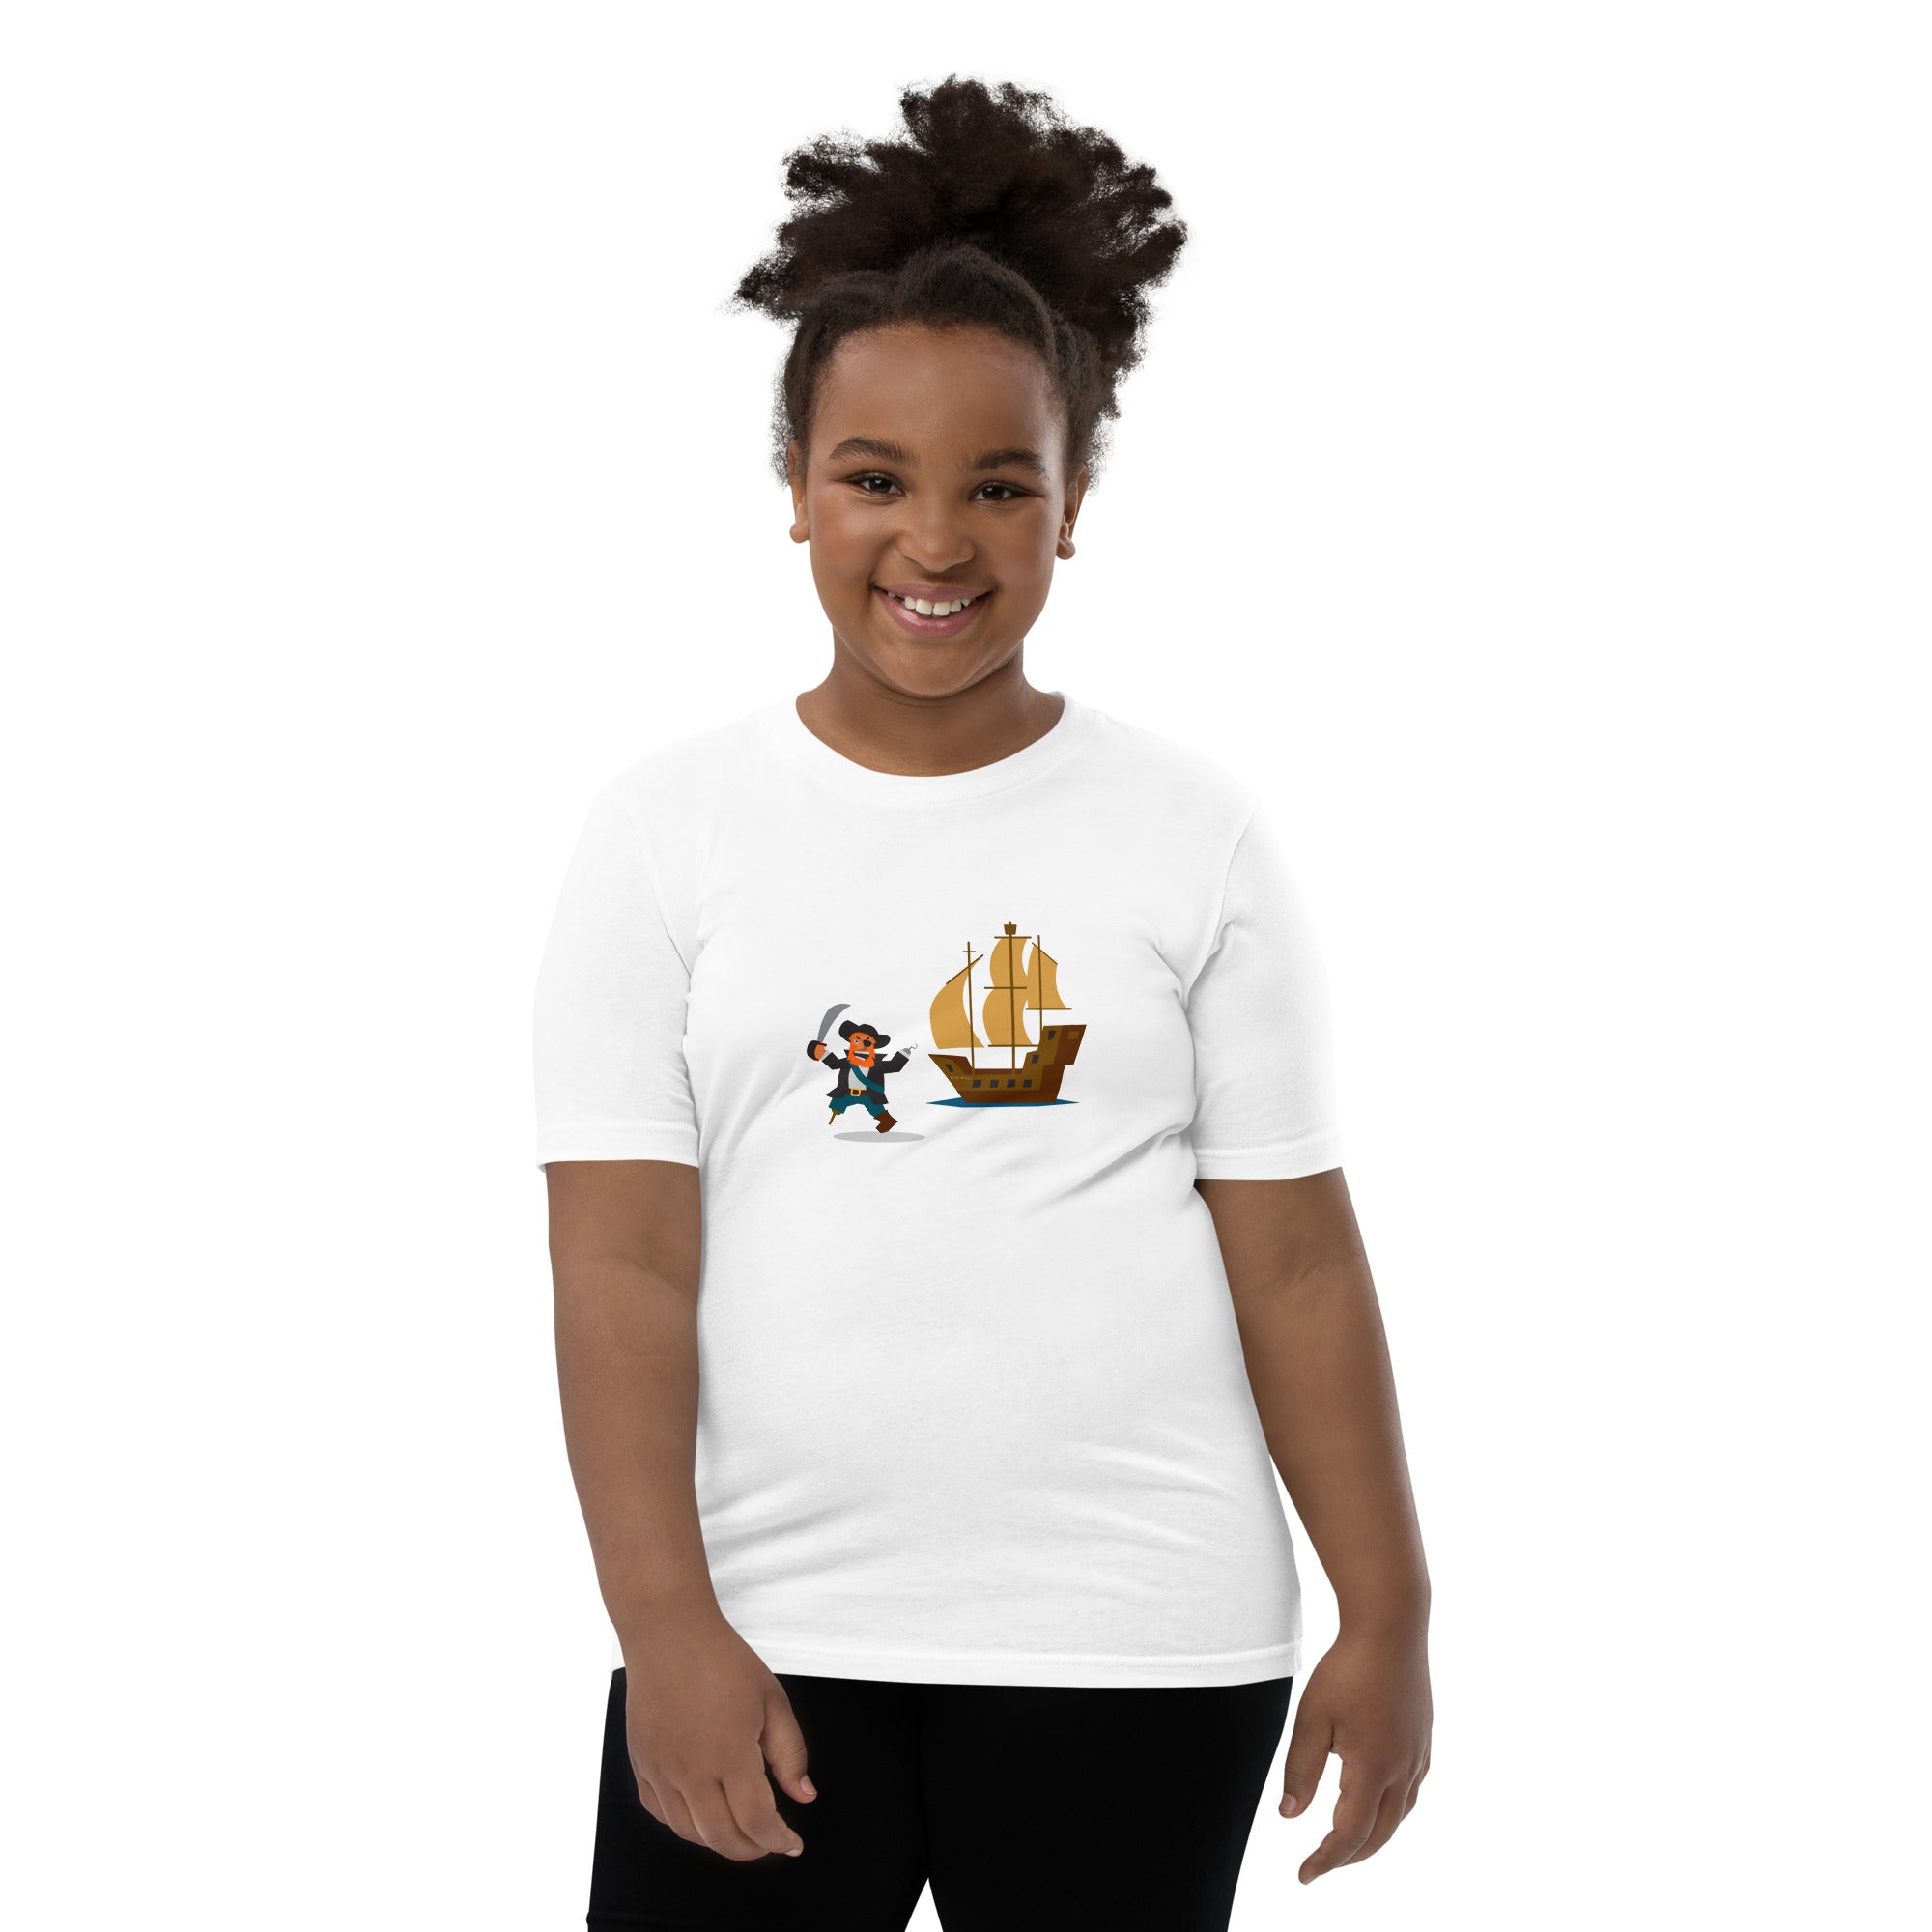 T-shirt pour adolescent Pirate HMS Bounty